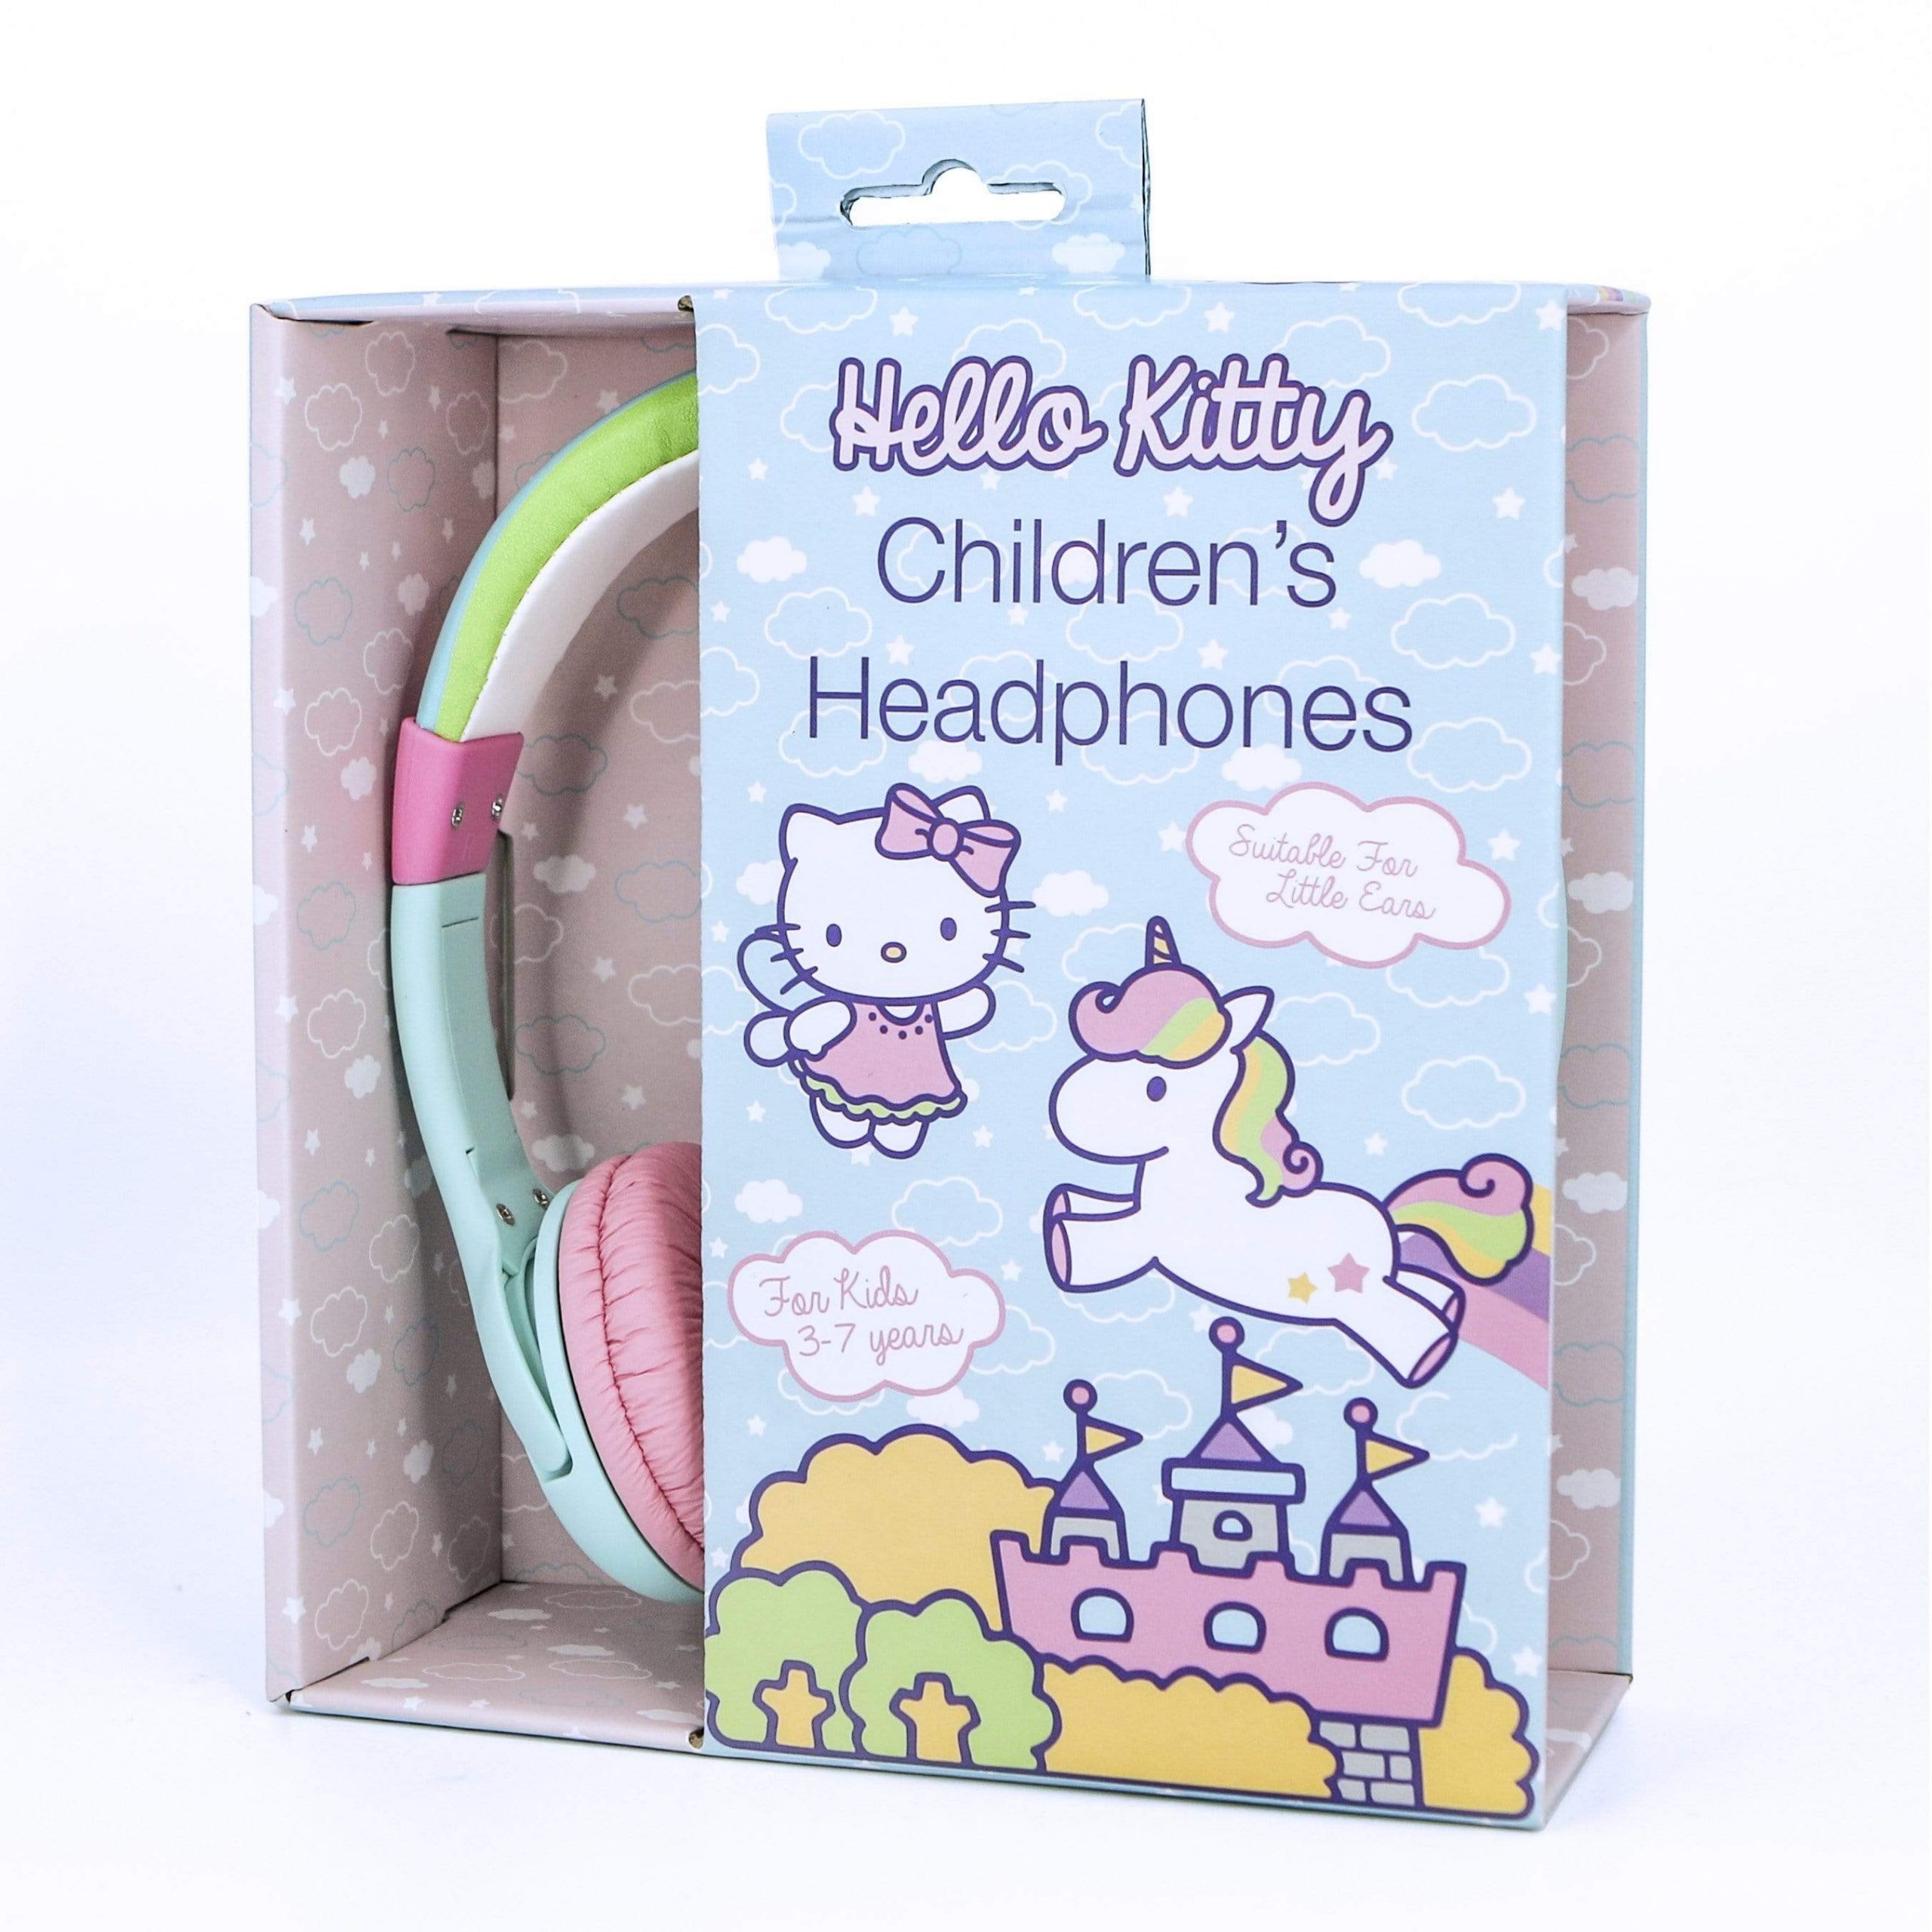 سماعات اطفال سلكية قابلة للطي 85 ديسيبل هالو كيتي او تي ال Otl Hellokitty 85db Foldable Wired Children's Headphones - 3}